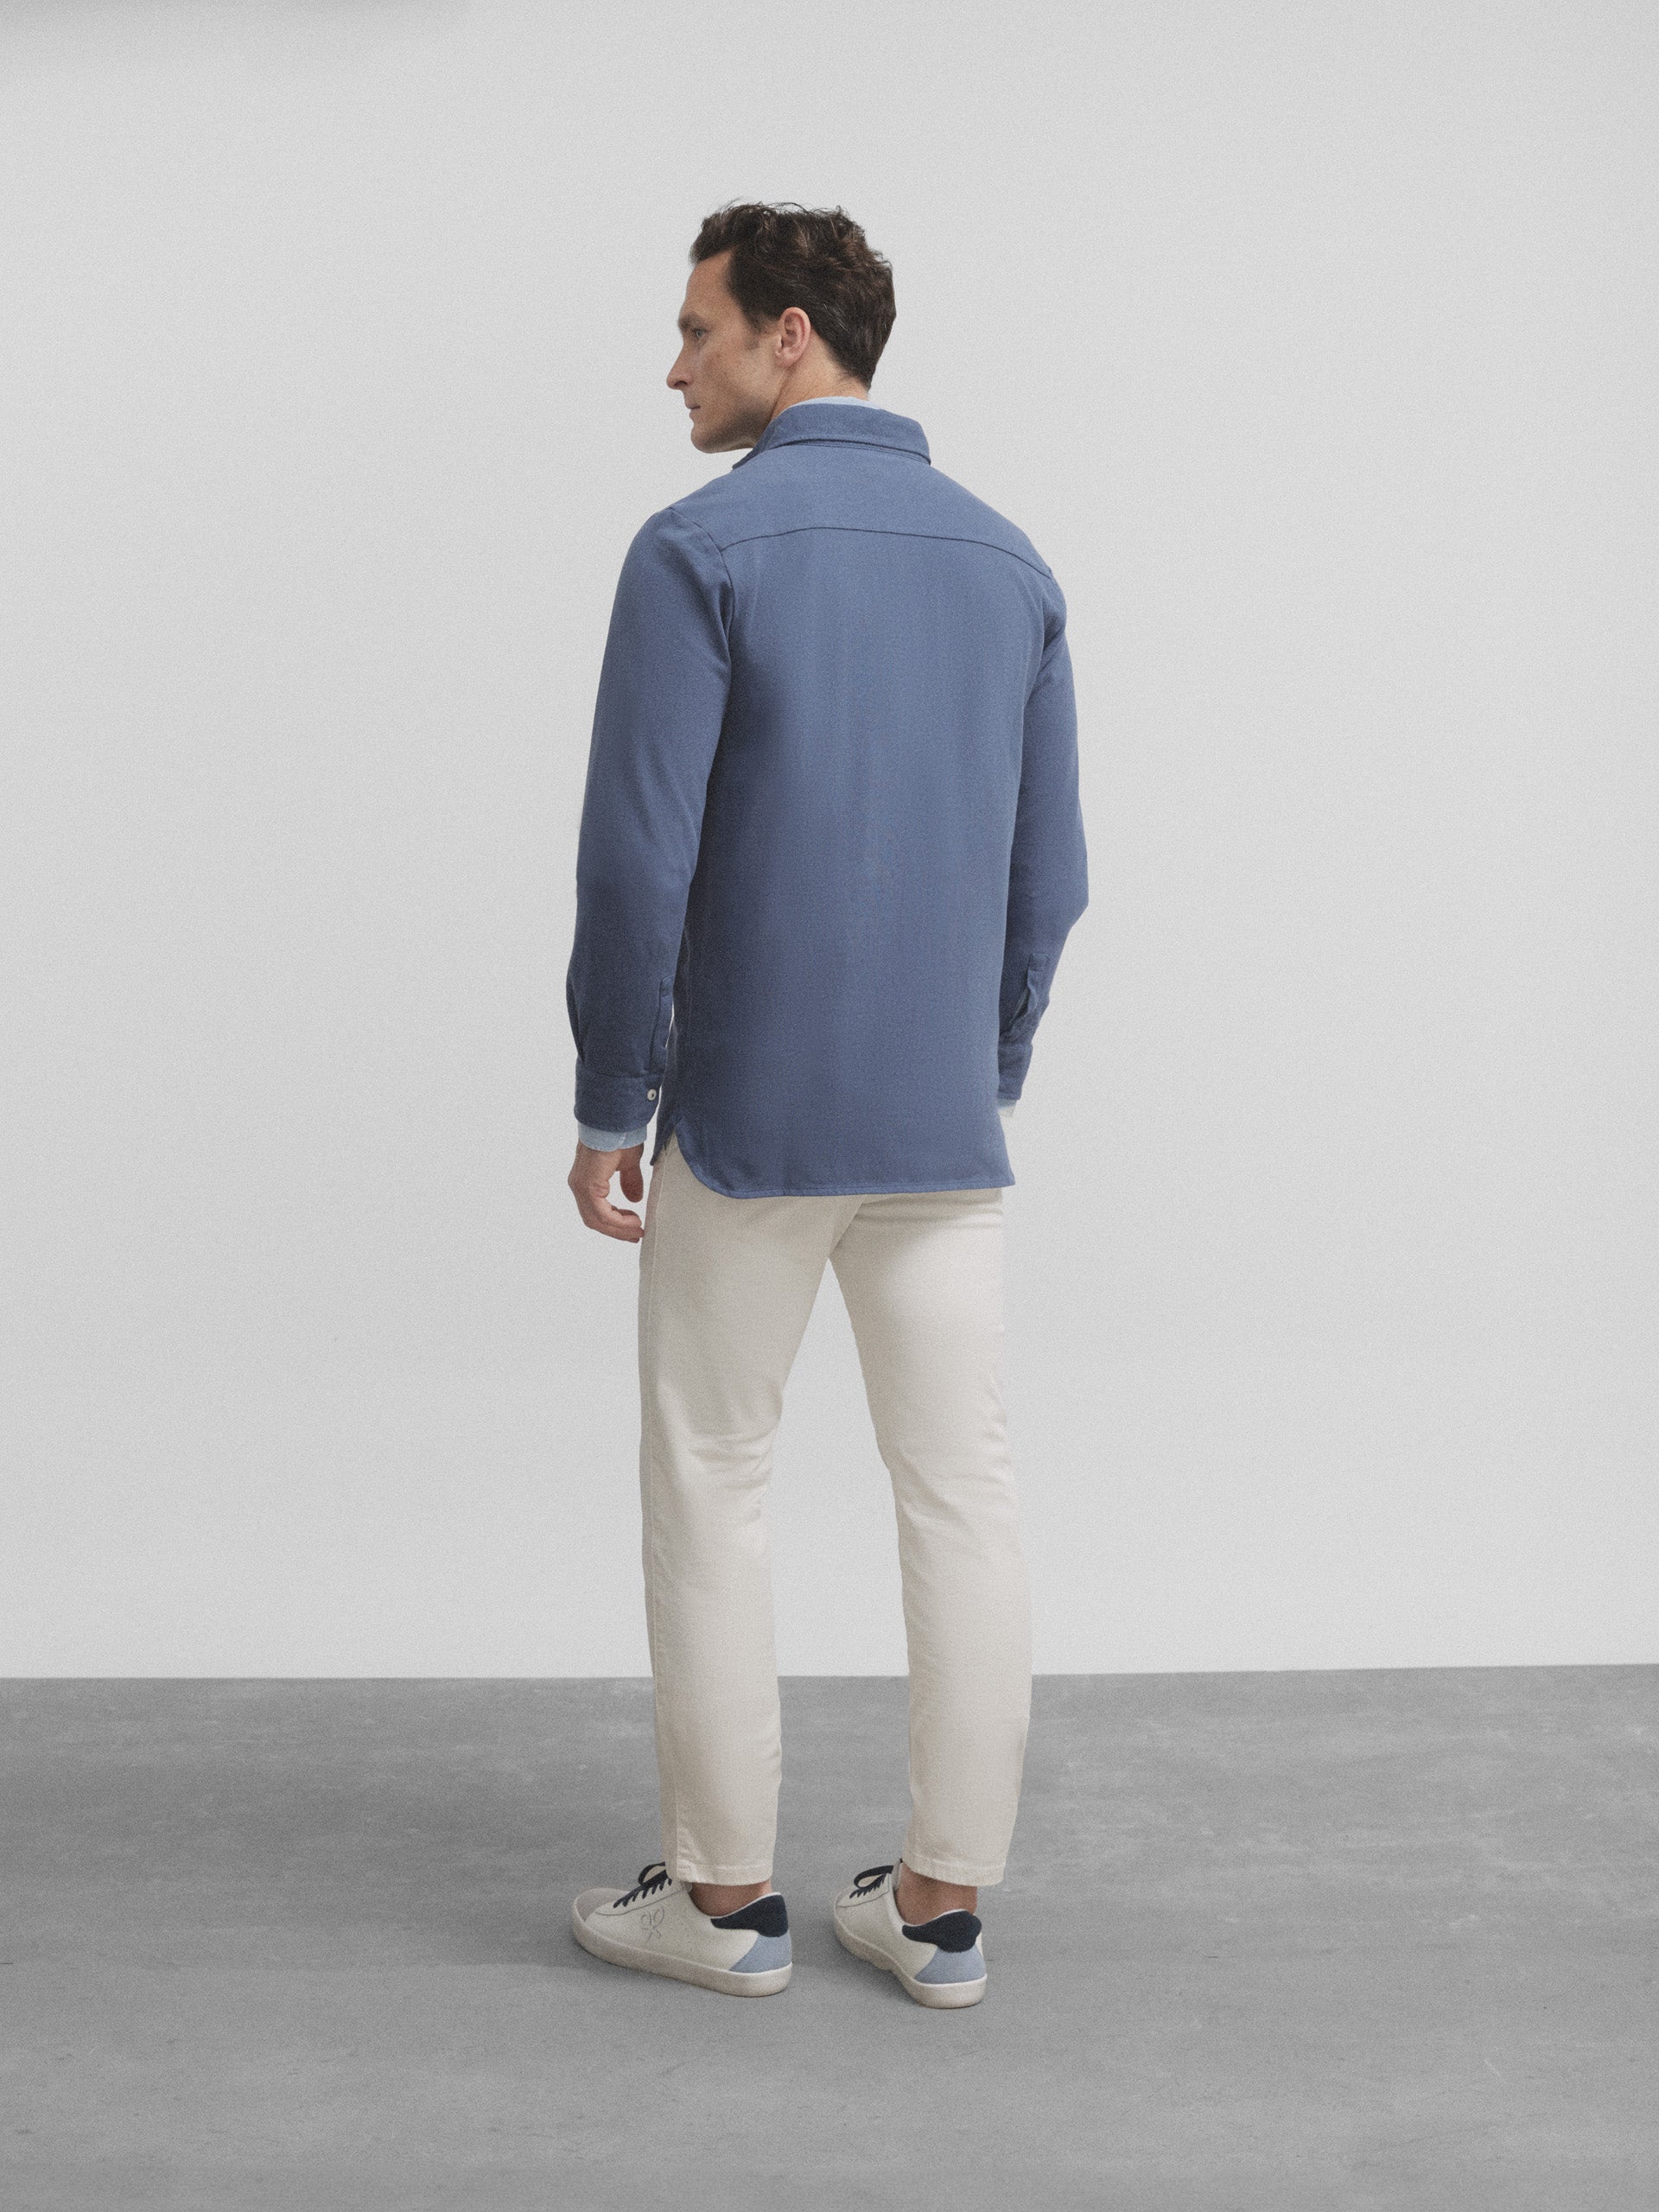 Medium blue plain long sleeve polo shirt